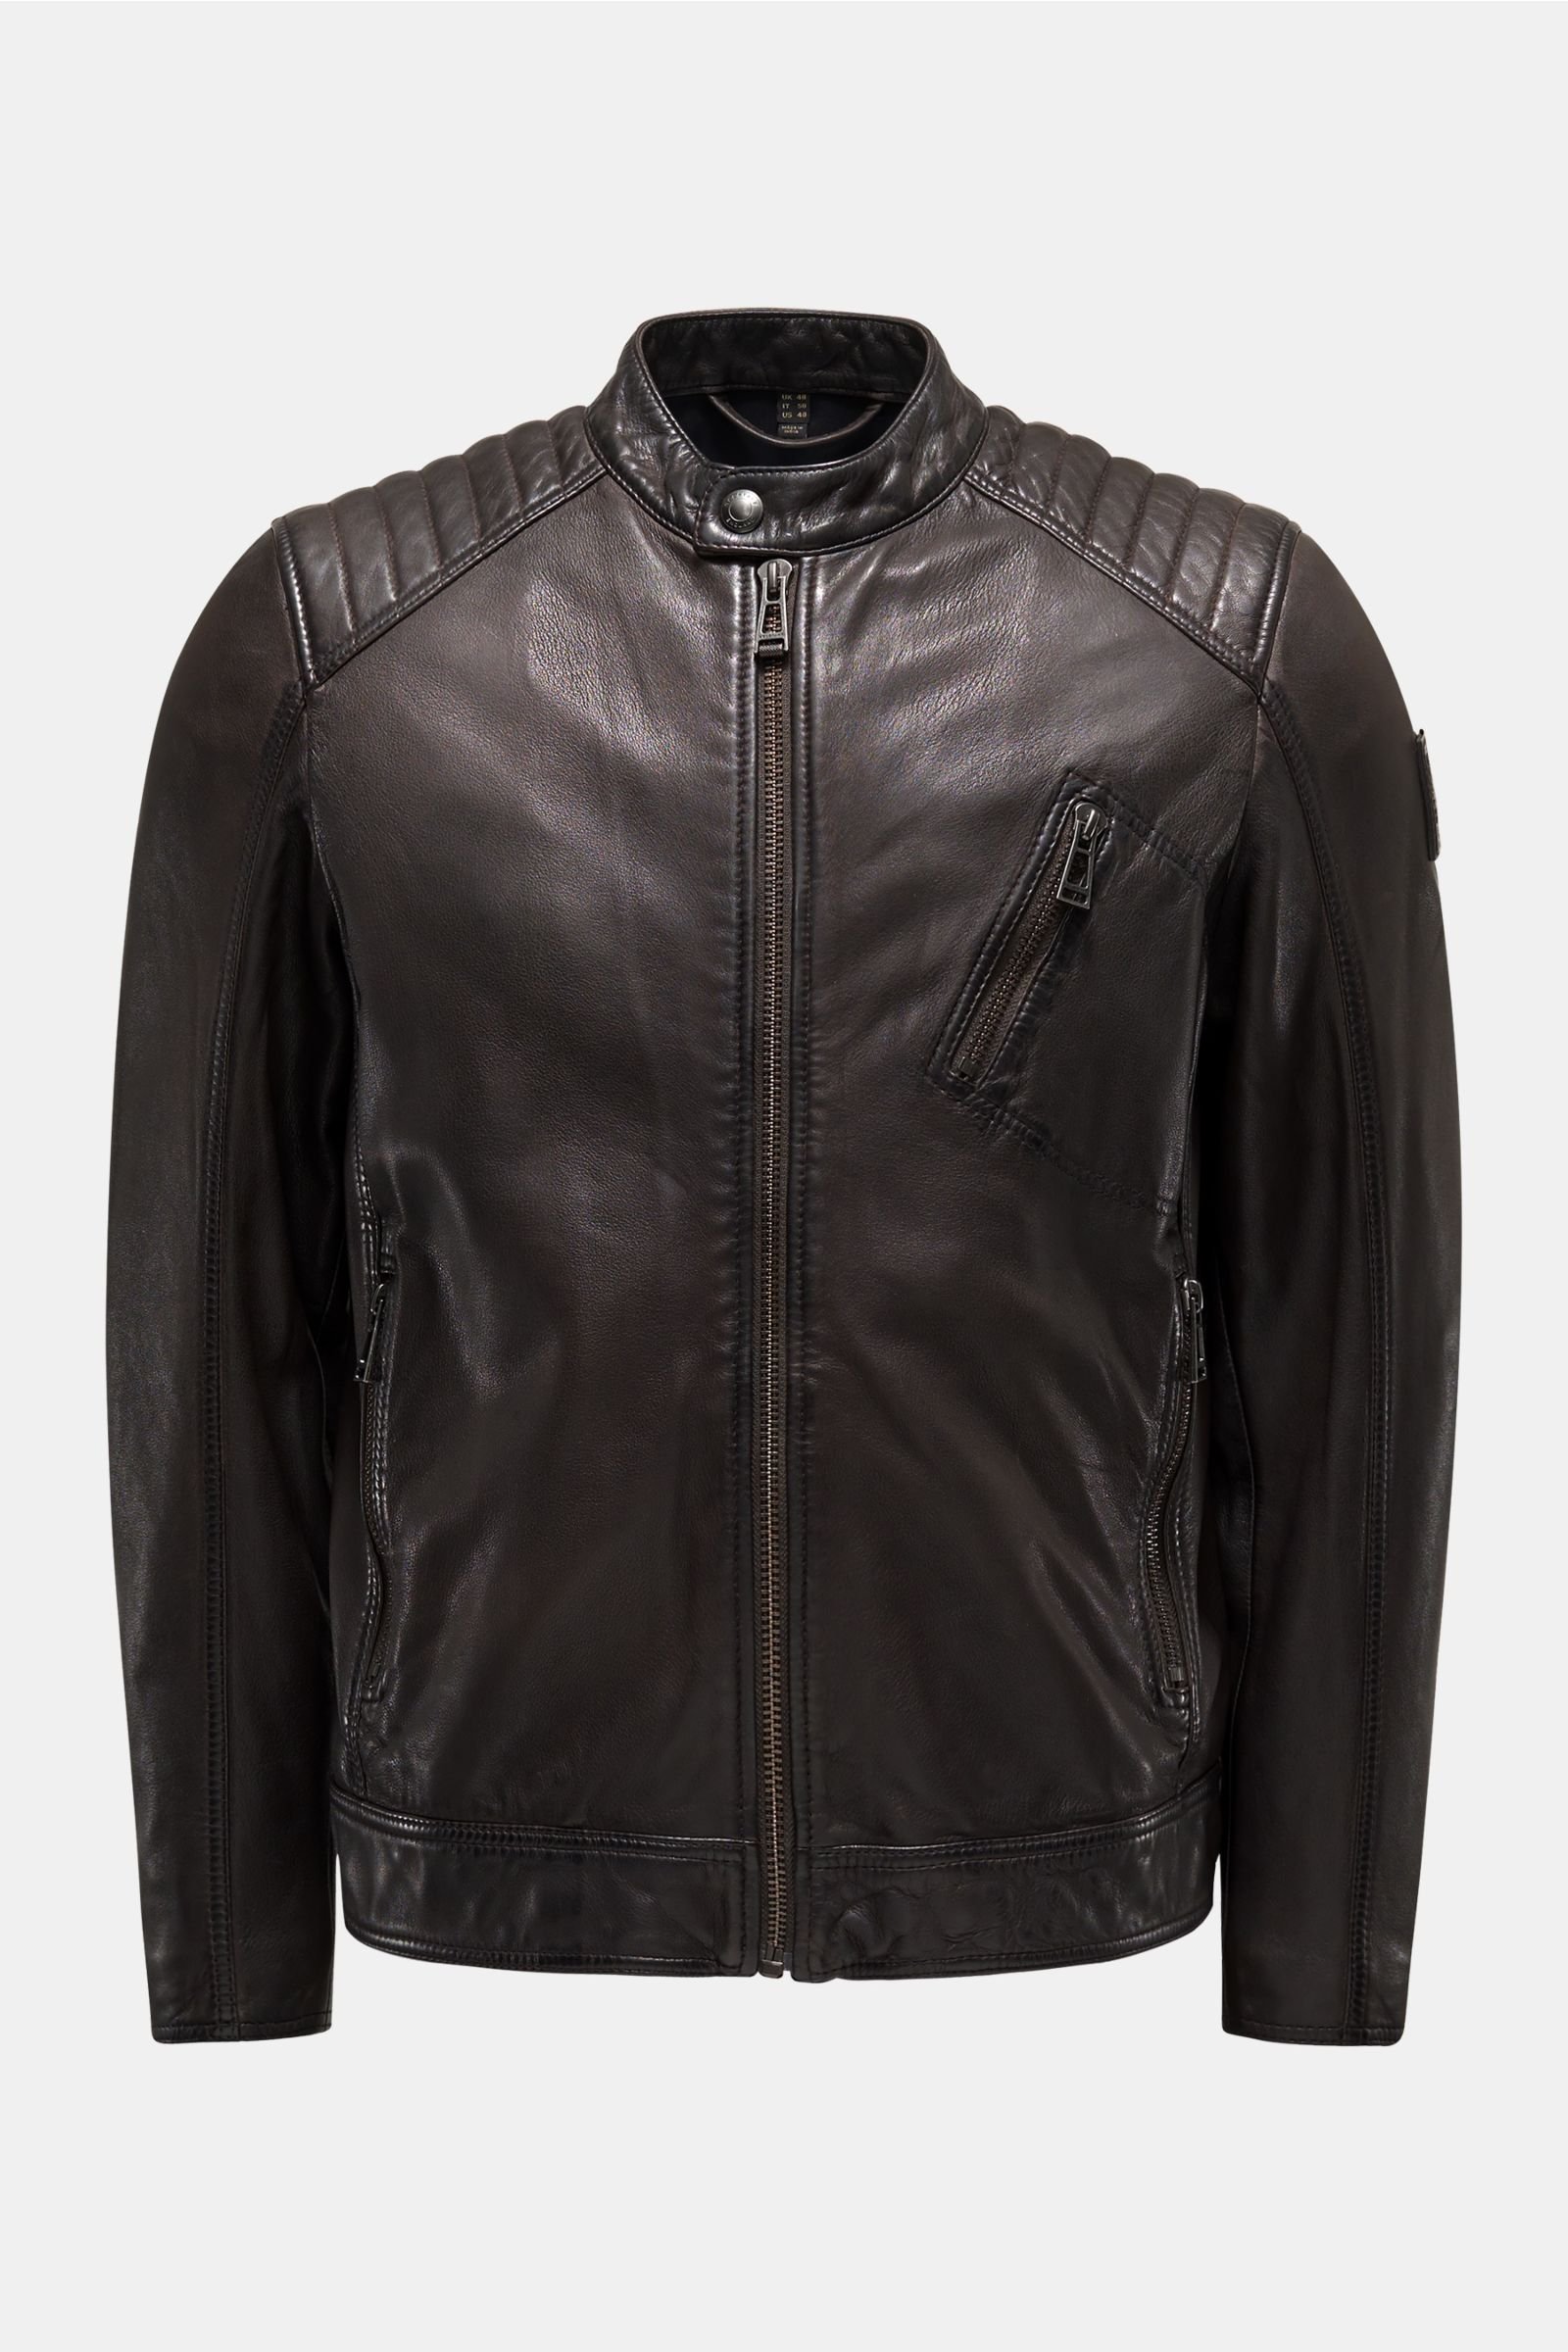 Leather jacket 'V Racer' dark brown